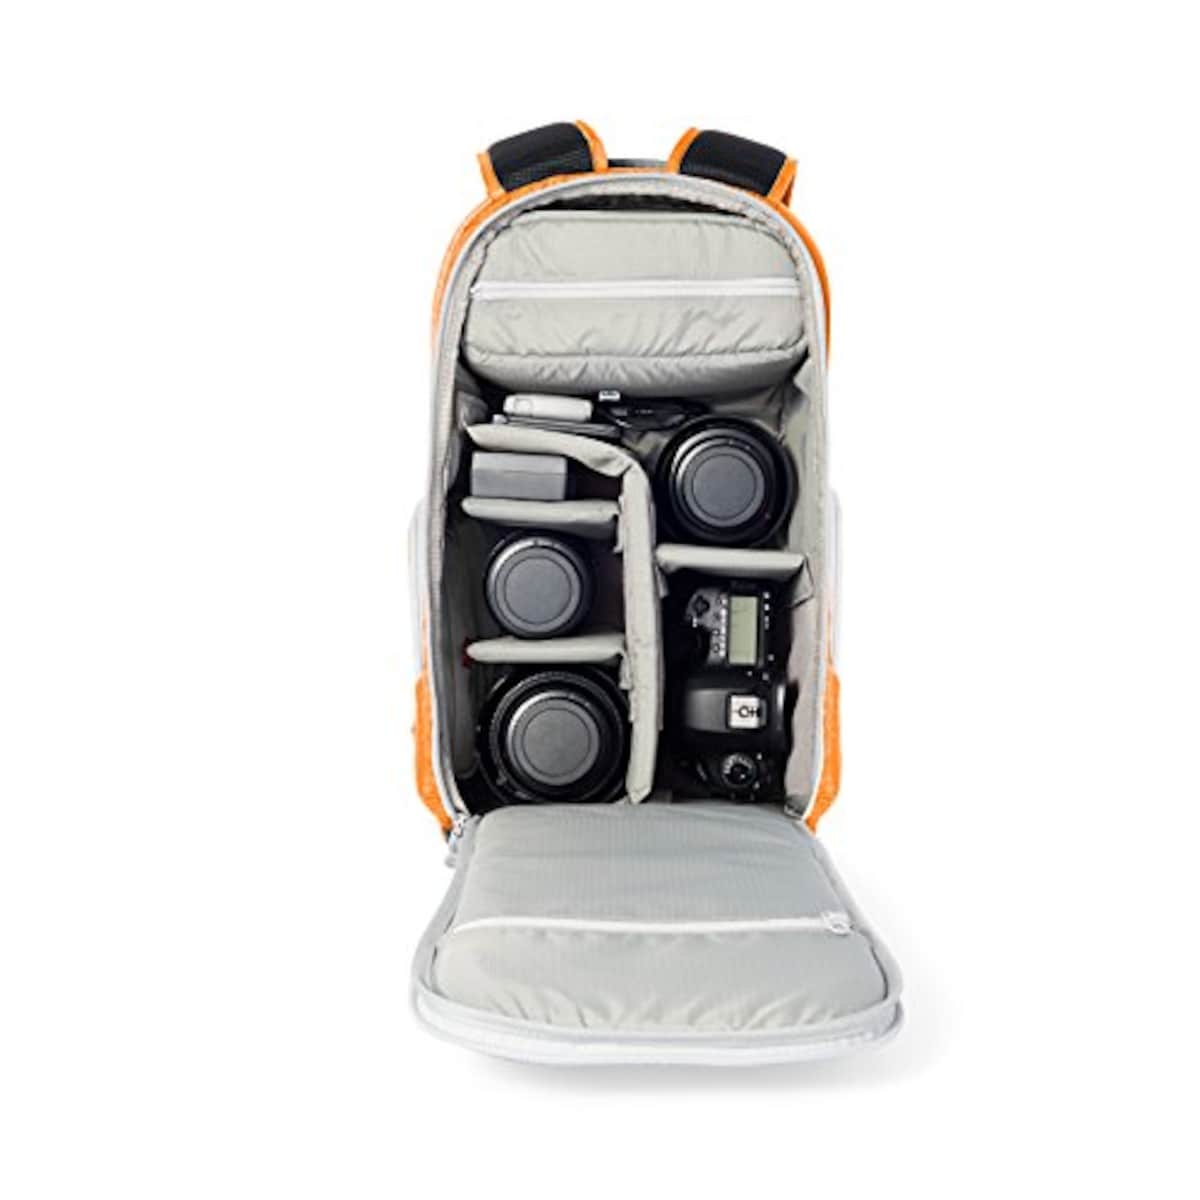  Amazonベーシック カメラリュック トレッカー カメラ用バックパック レインカバー付き オレンジ画像3 